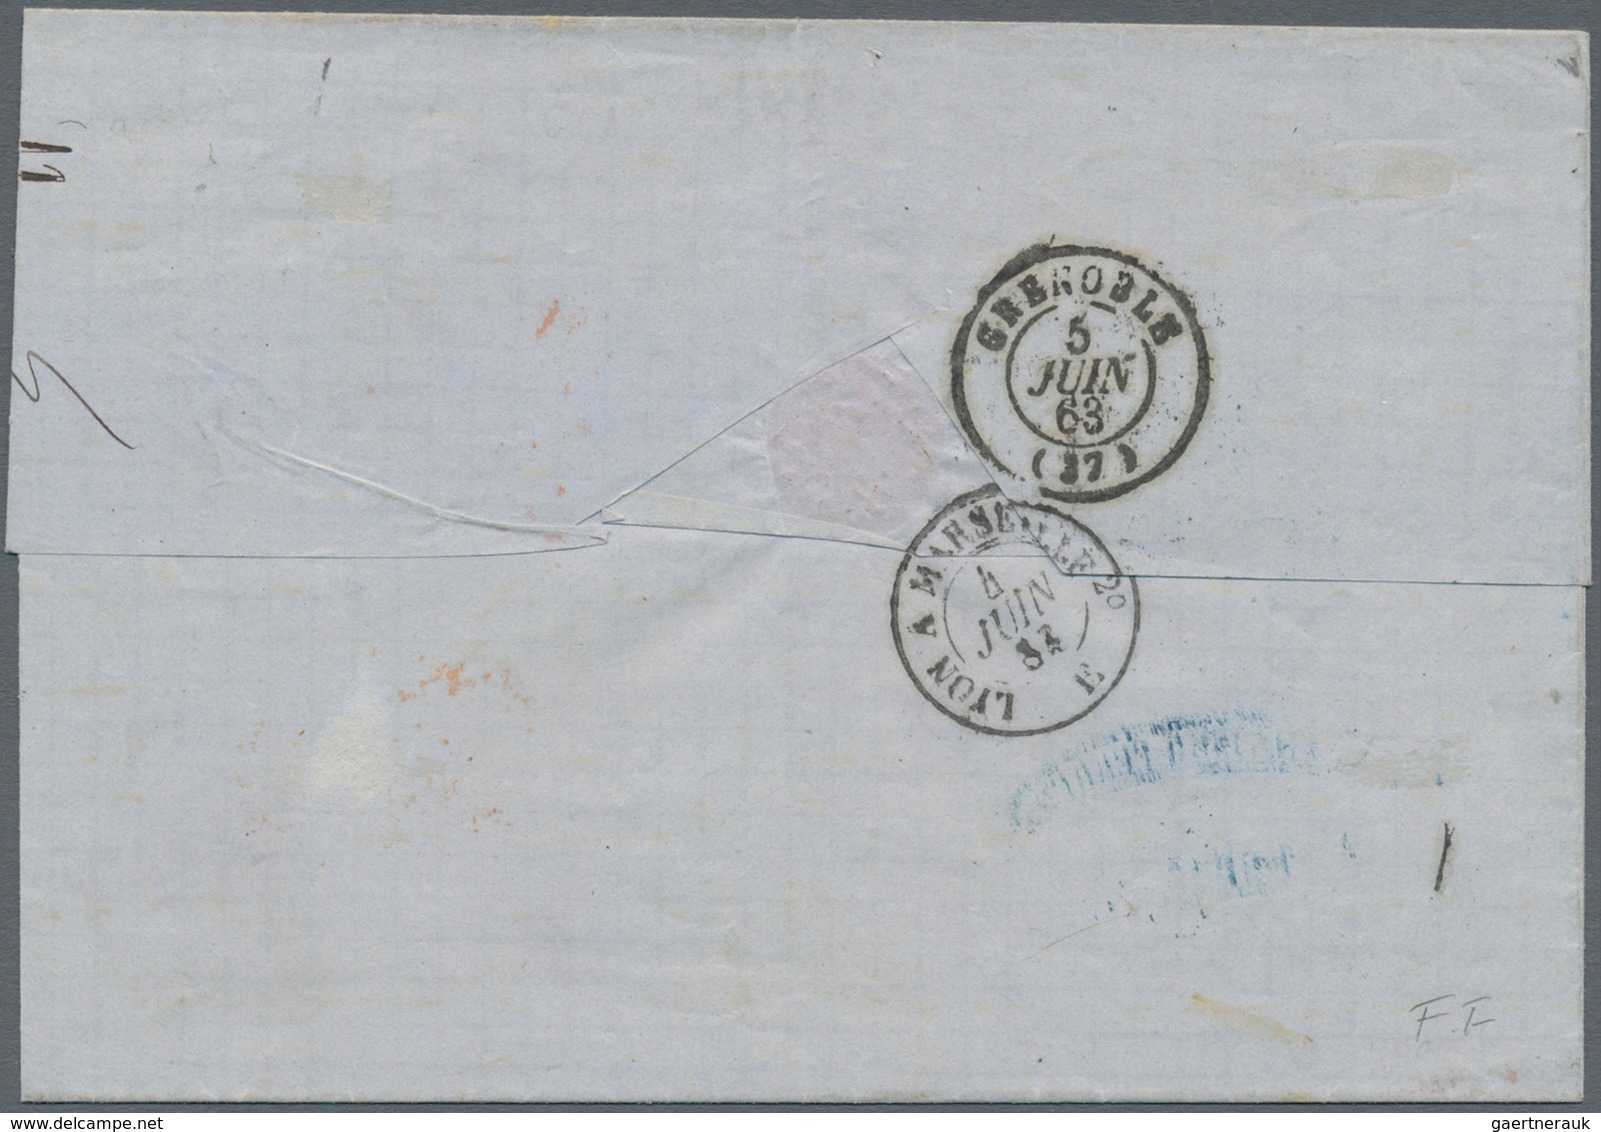 00860 Italien - Altitalienische Staaten: Sardinien: 1863: 80 Centesimi Yellow, Single Franking On Letter T - Sardinië